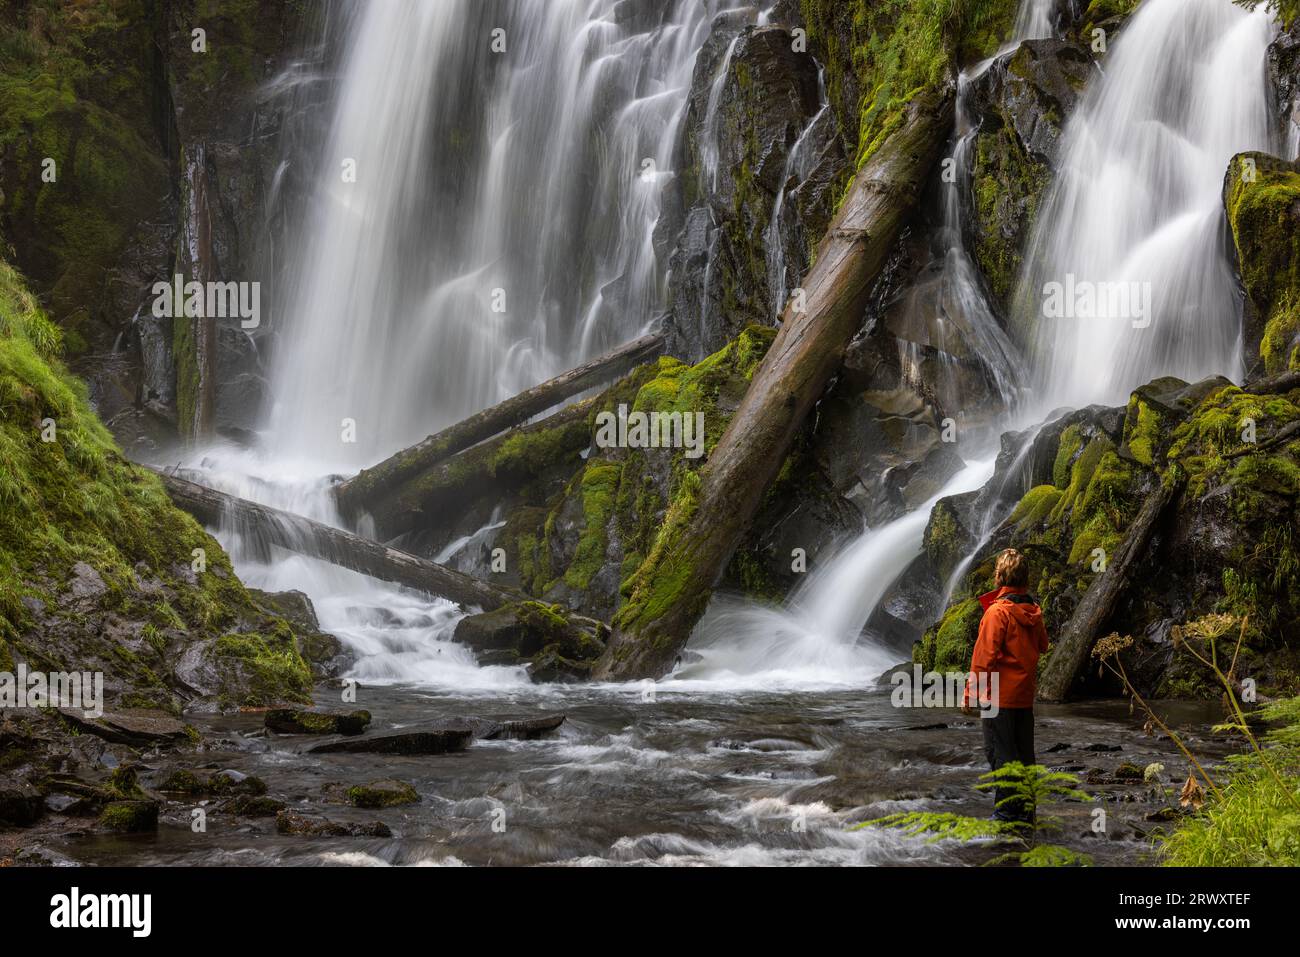 Wanderer tragen eine orangefarbene Jacke, die vor einem großen und wunderschönen Wasserfall im Wald von Oregon steht Stockfoto